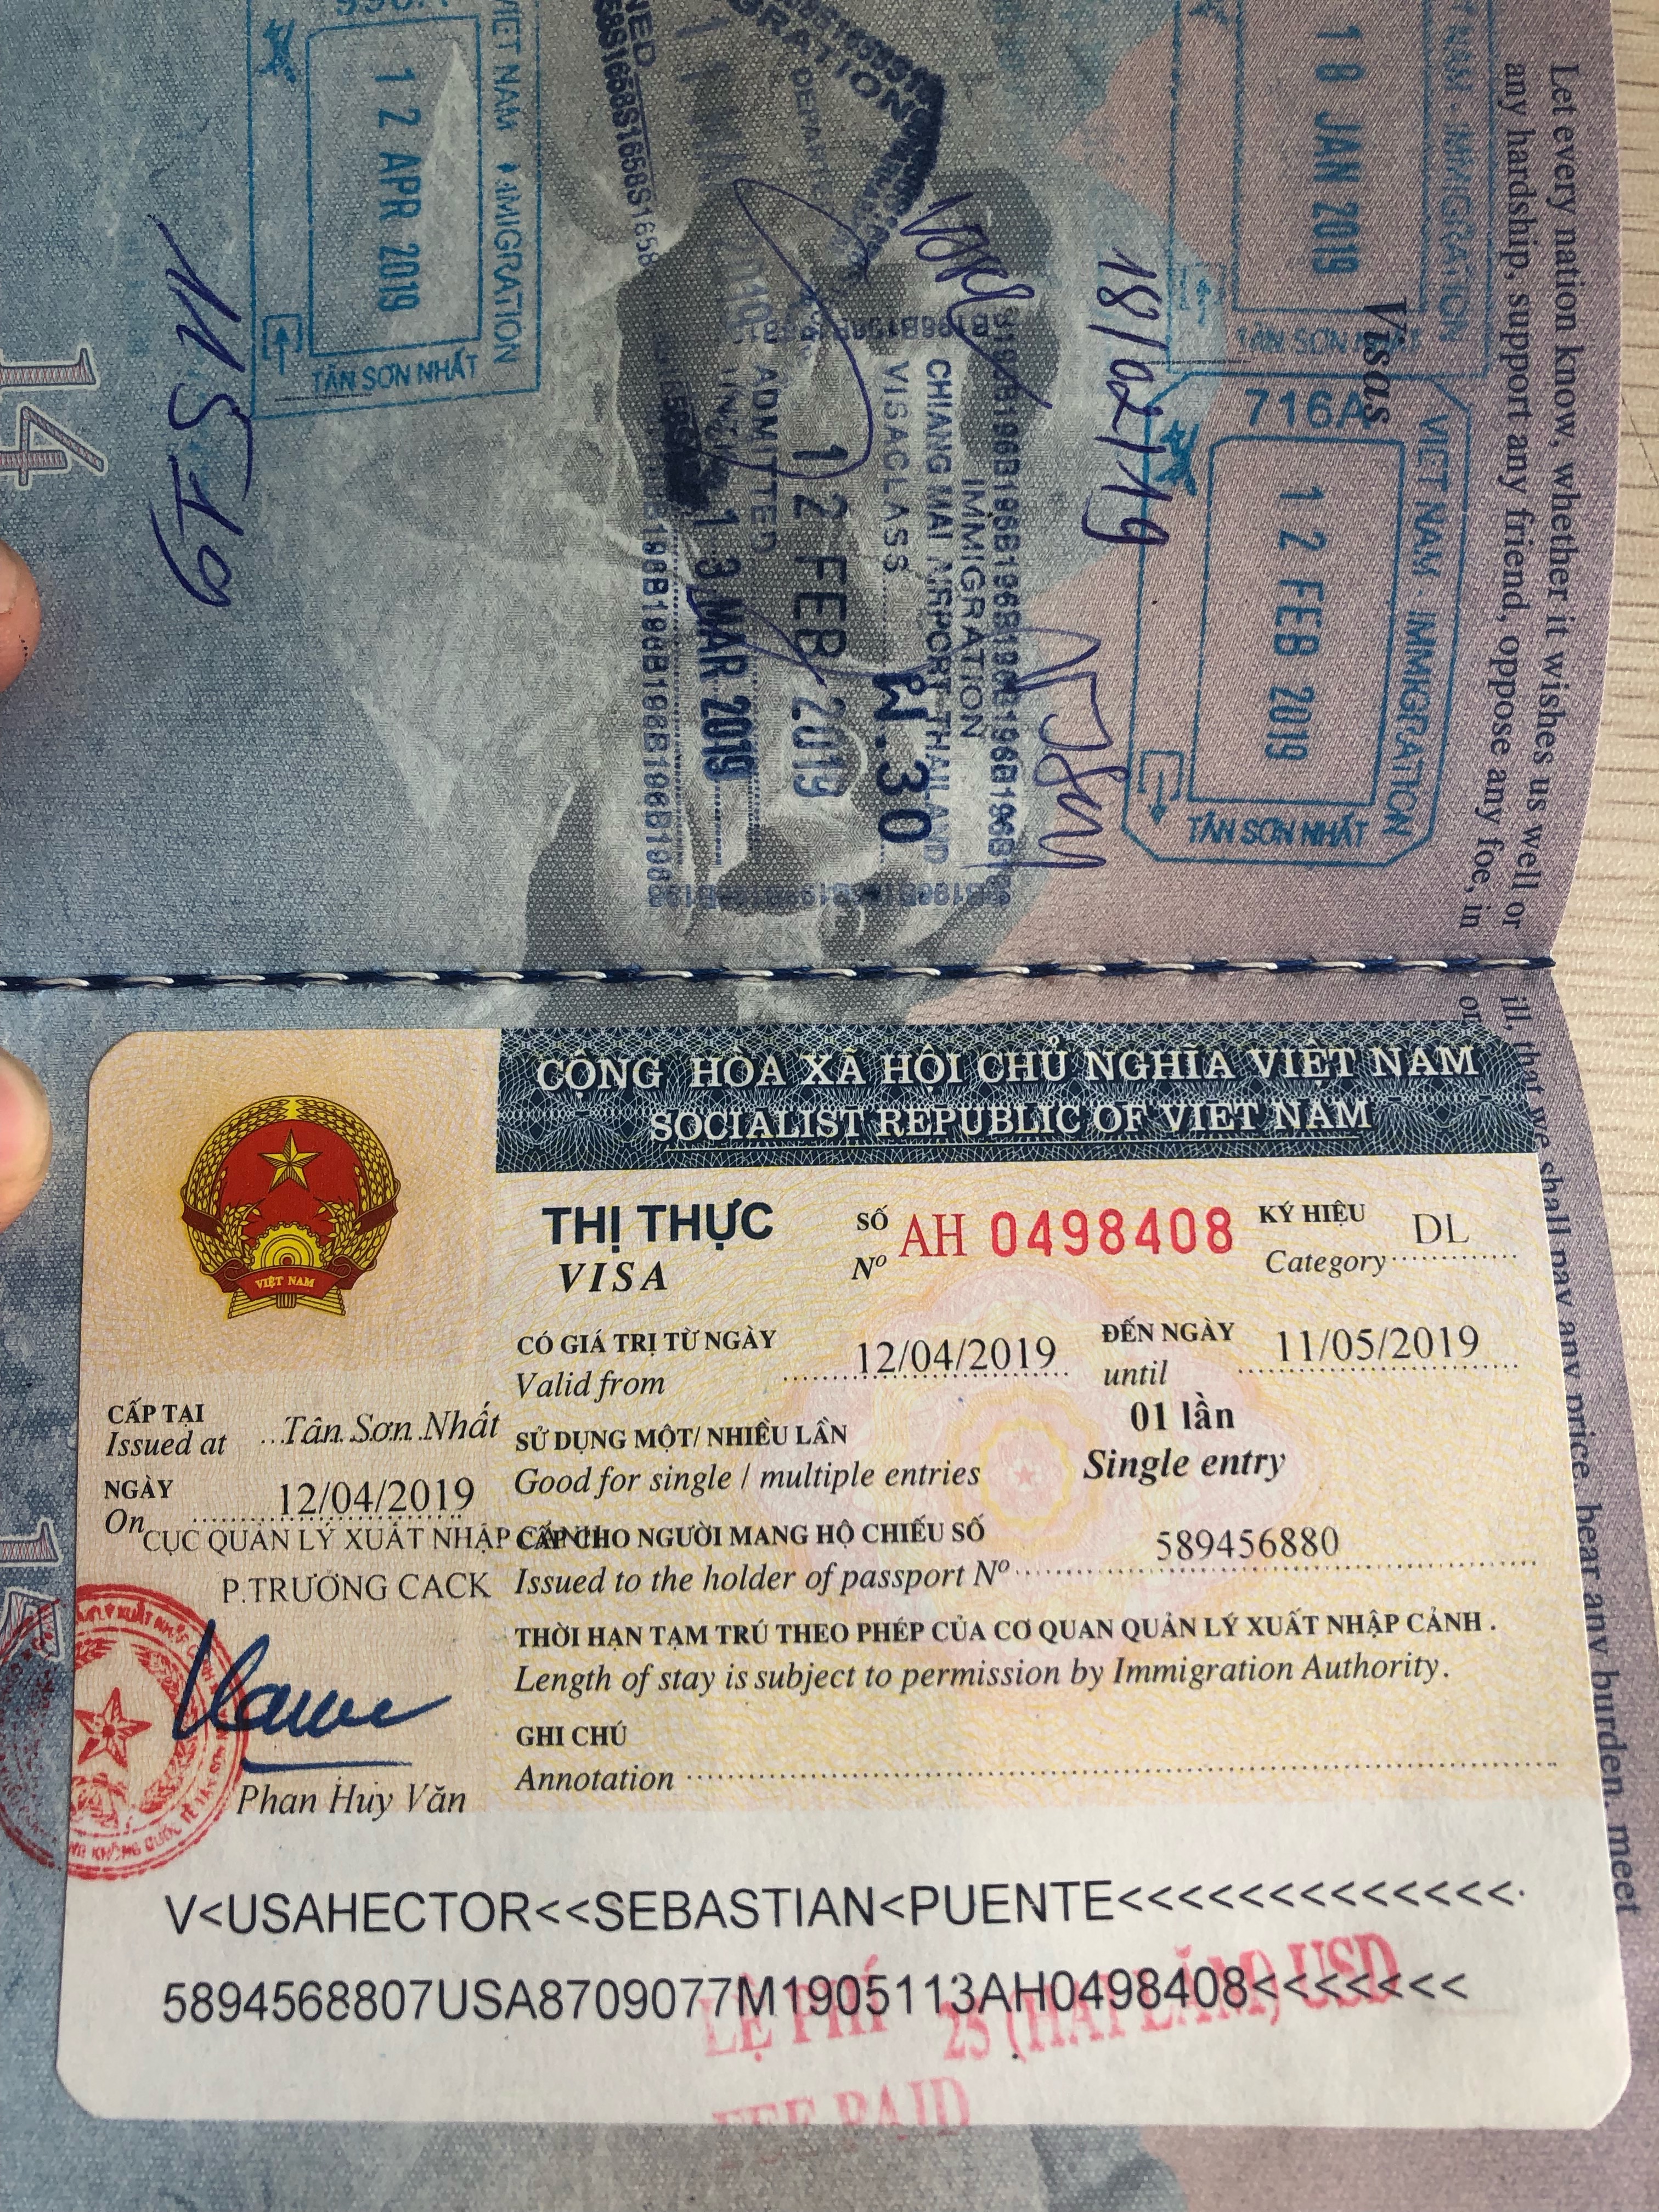 من مؤهل للحصول على تأشيرة فيتنام عند الوصول؟